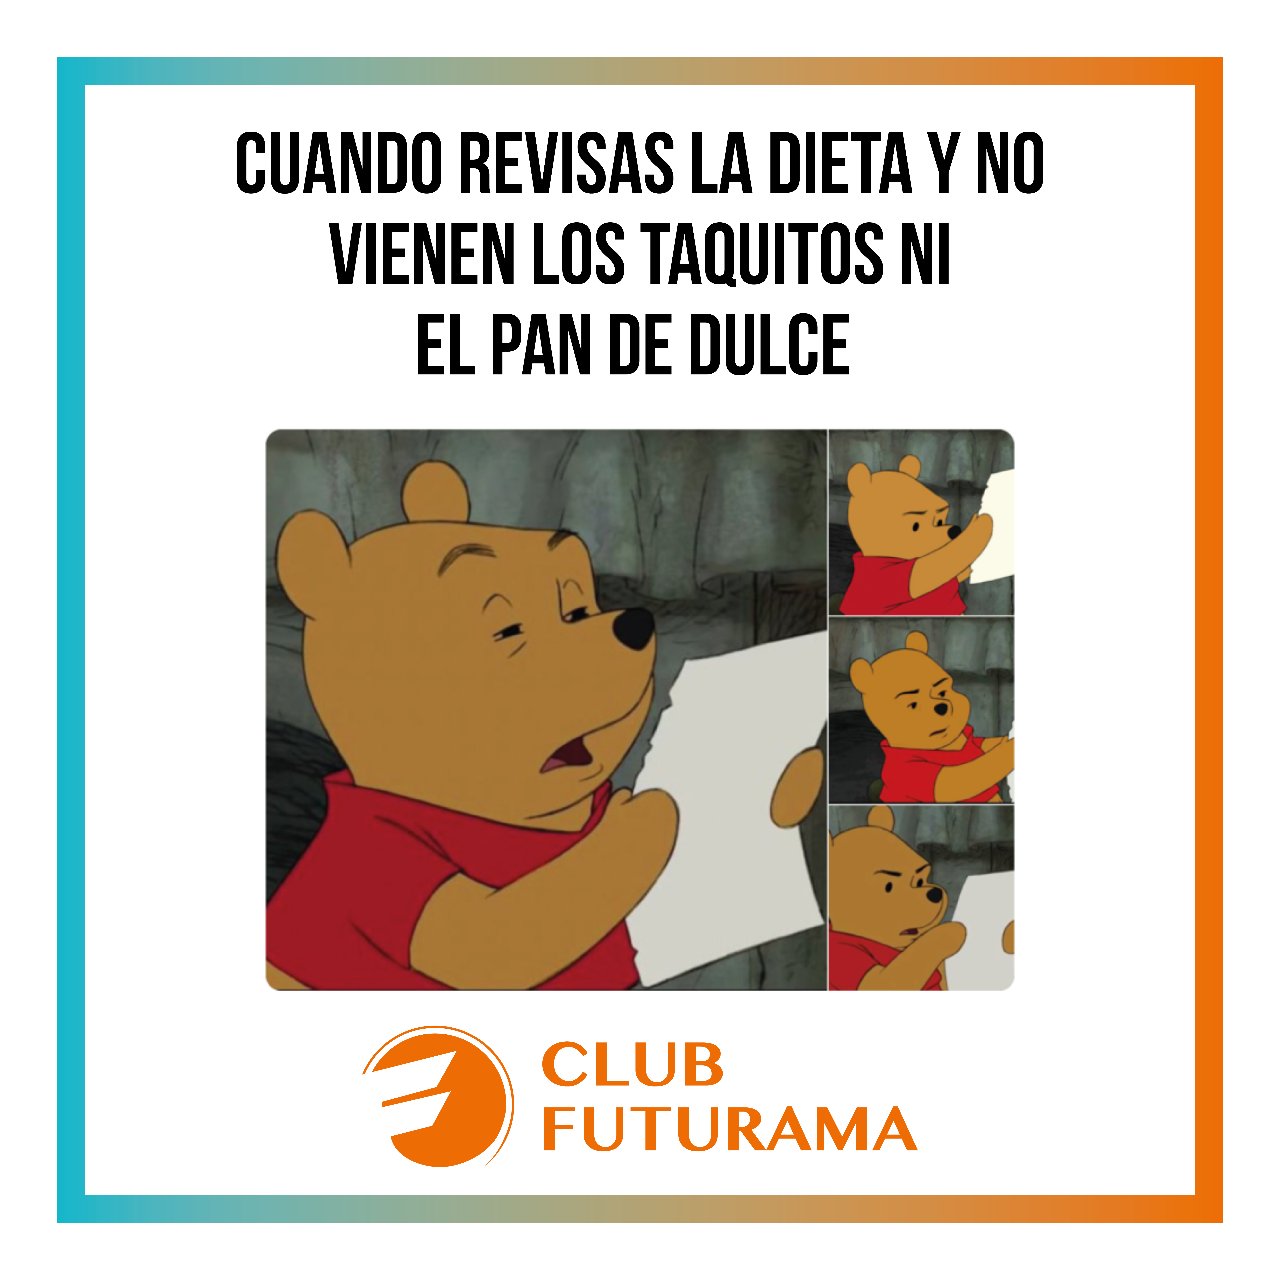 Club Futurama (@Club_Futurama) / Twitter